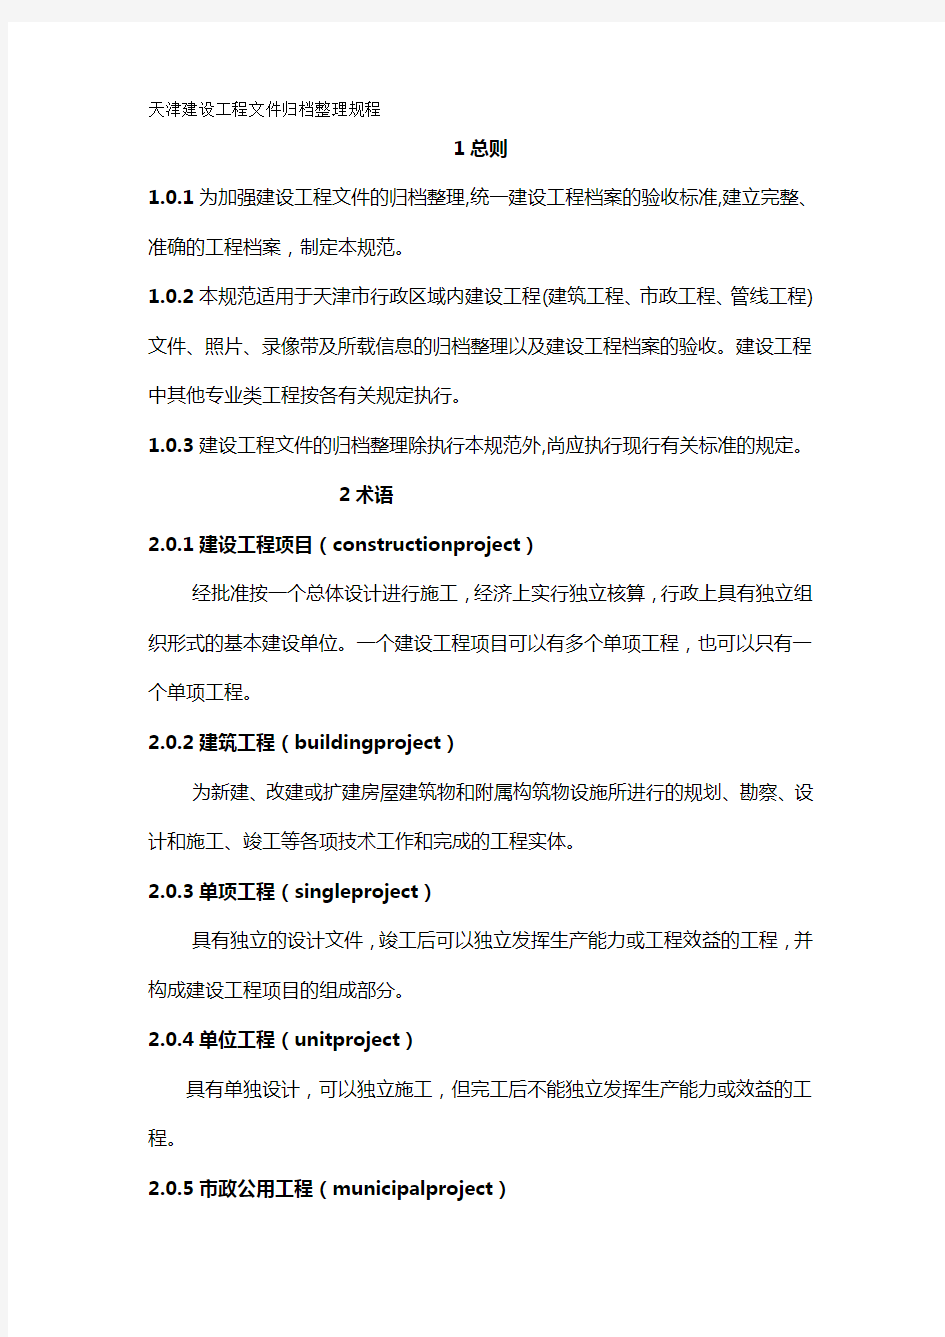 【建筑工程类】天津建设工程文件归档整理规程